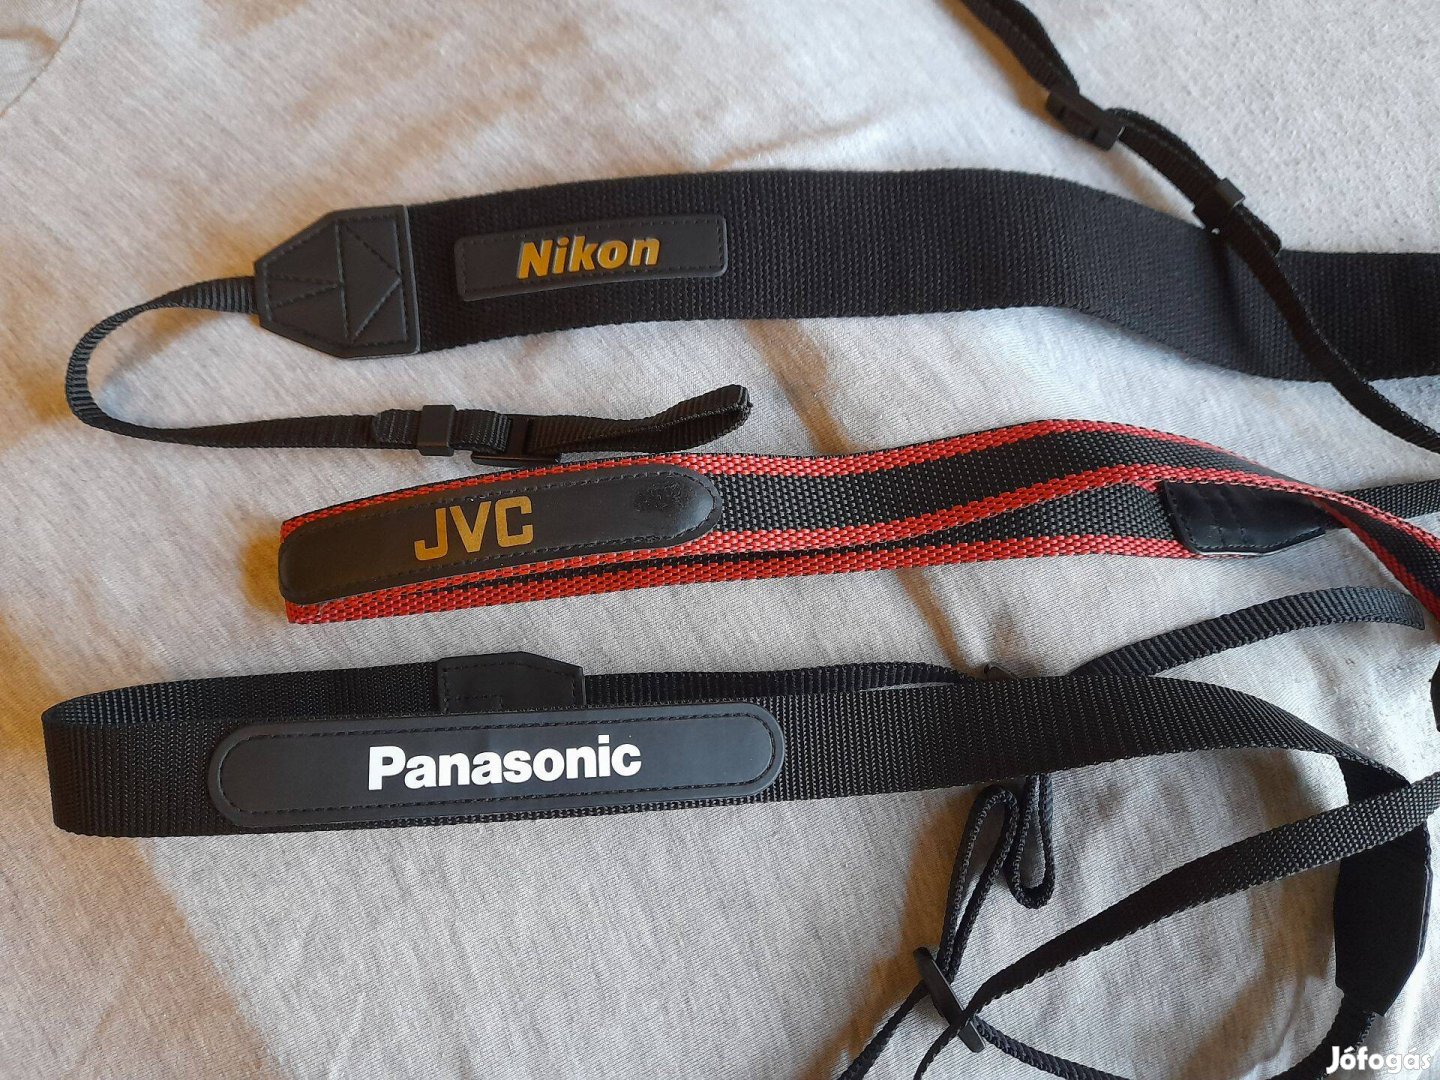 Nikon,JVC,Panasonic vállpántok